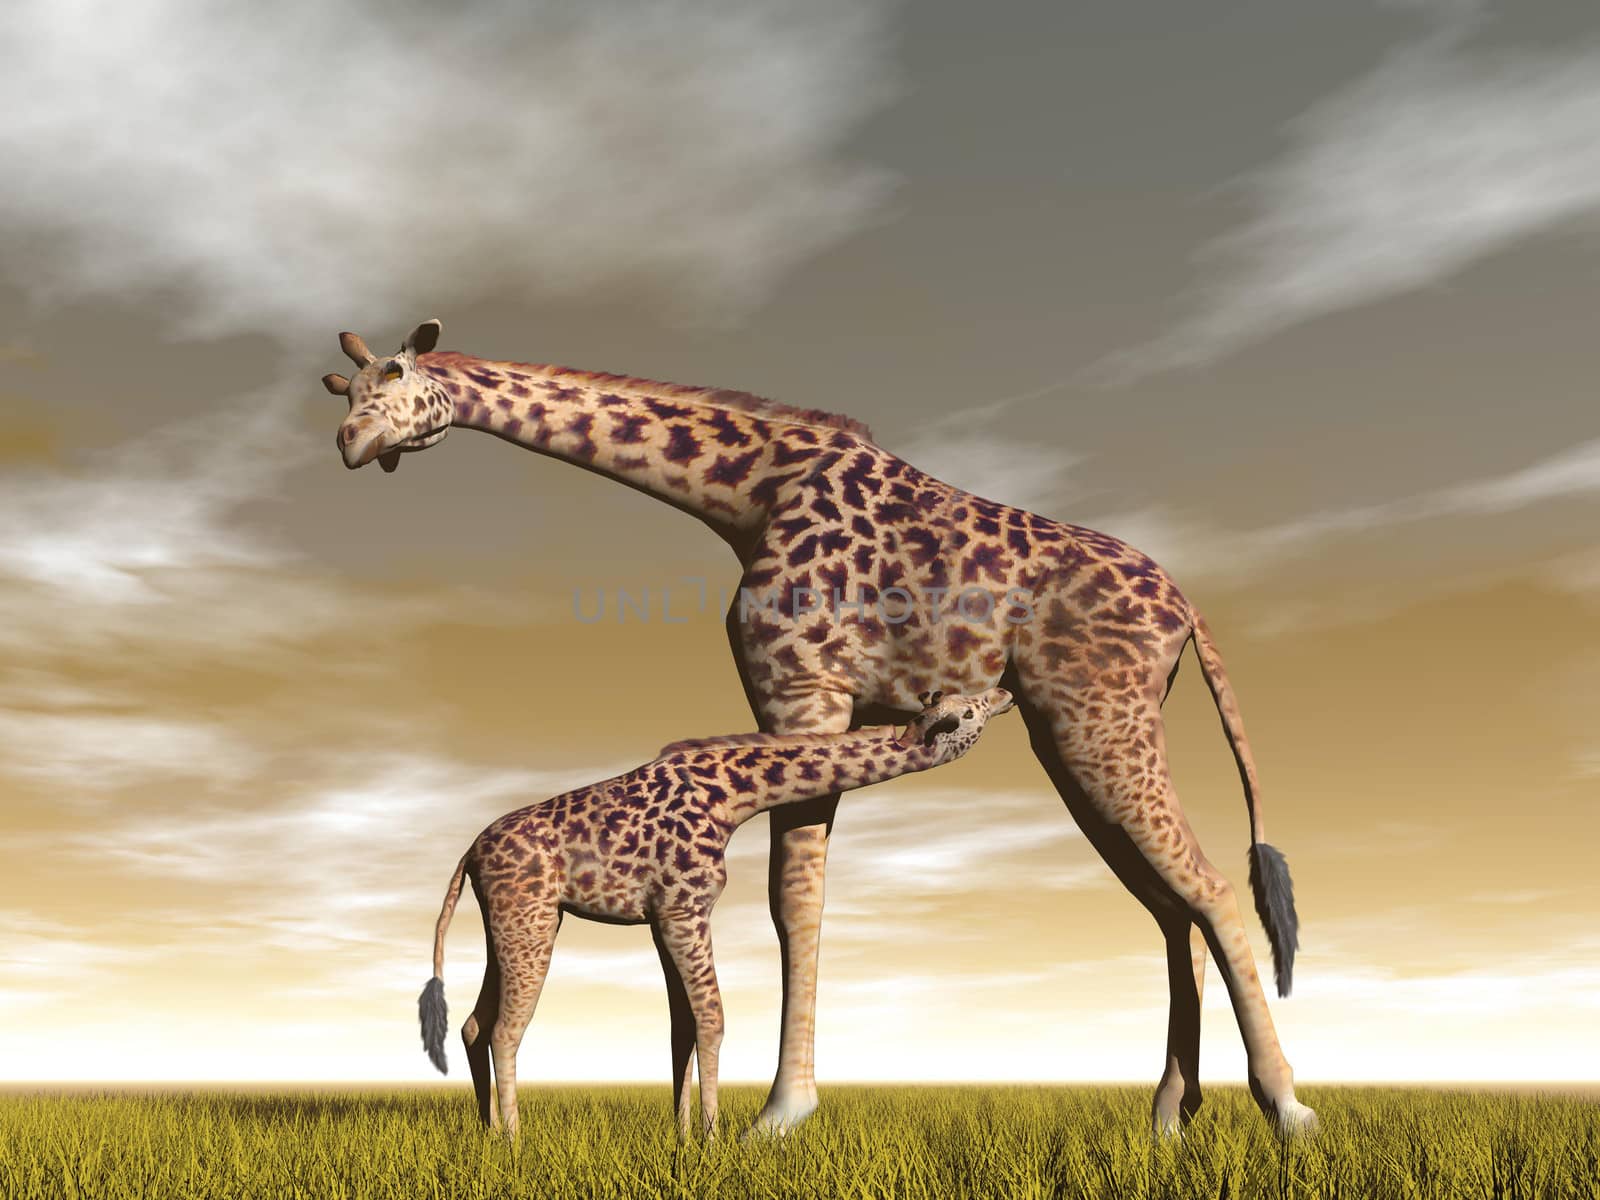 Mum and baby giraffe - 3D render by Elenaphotos21